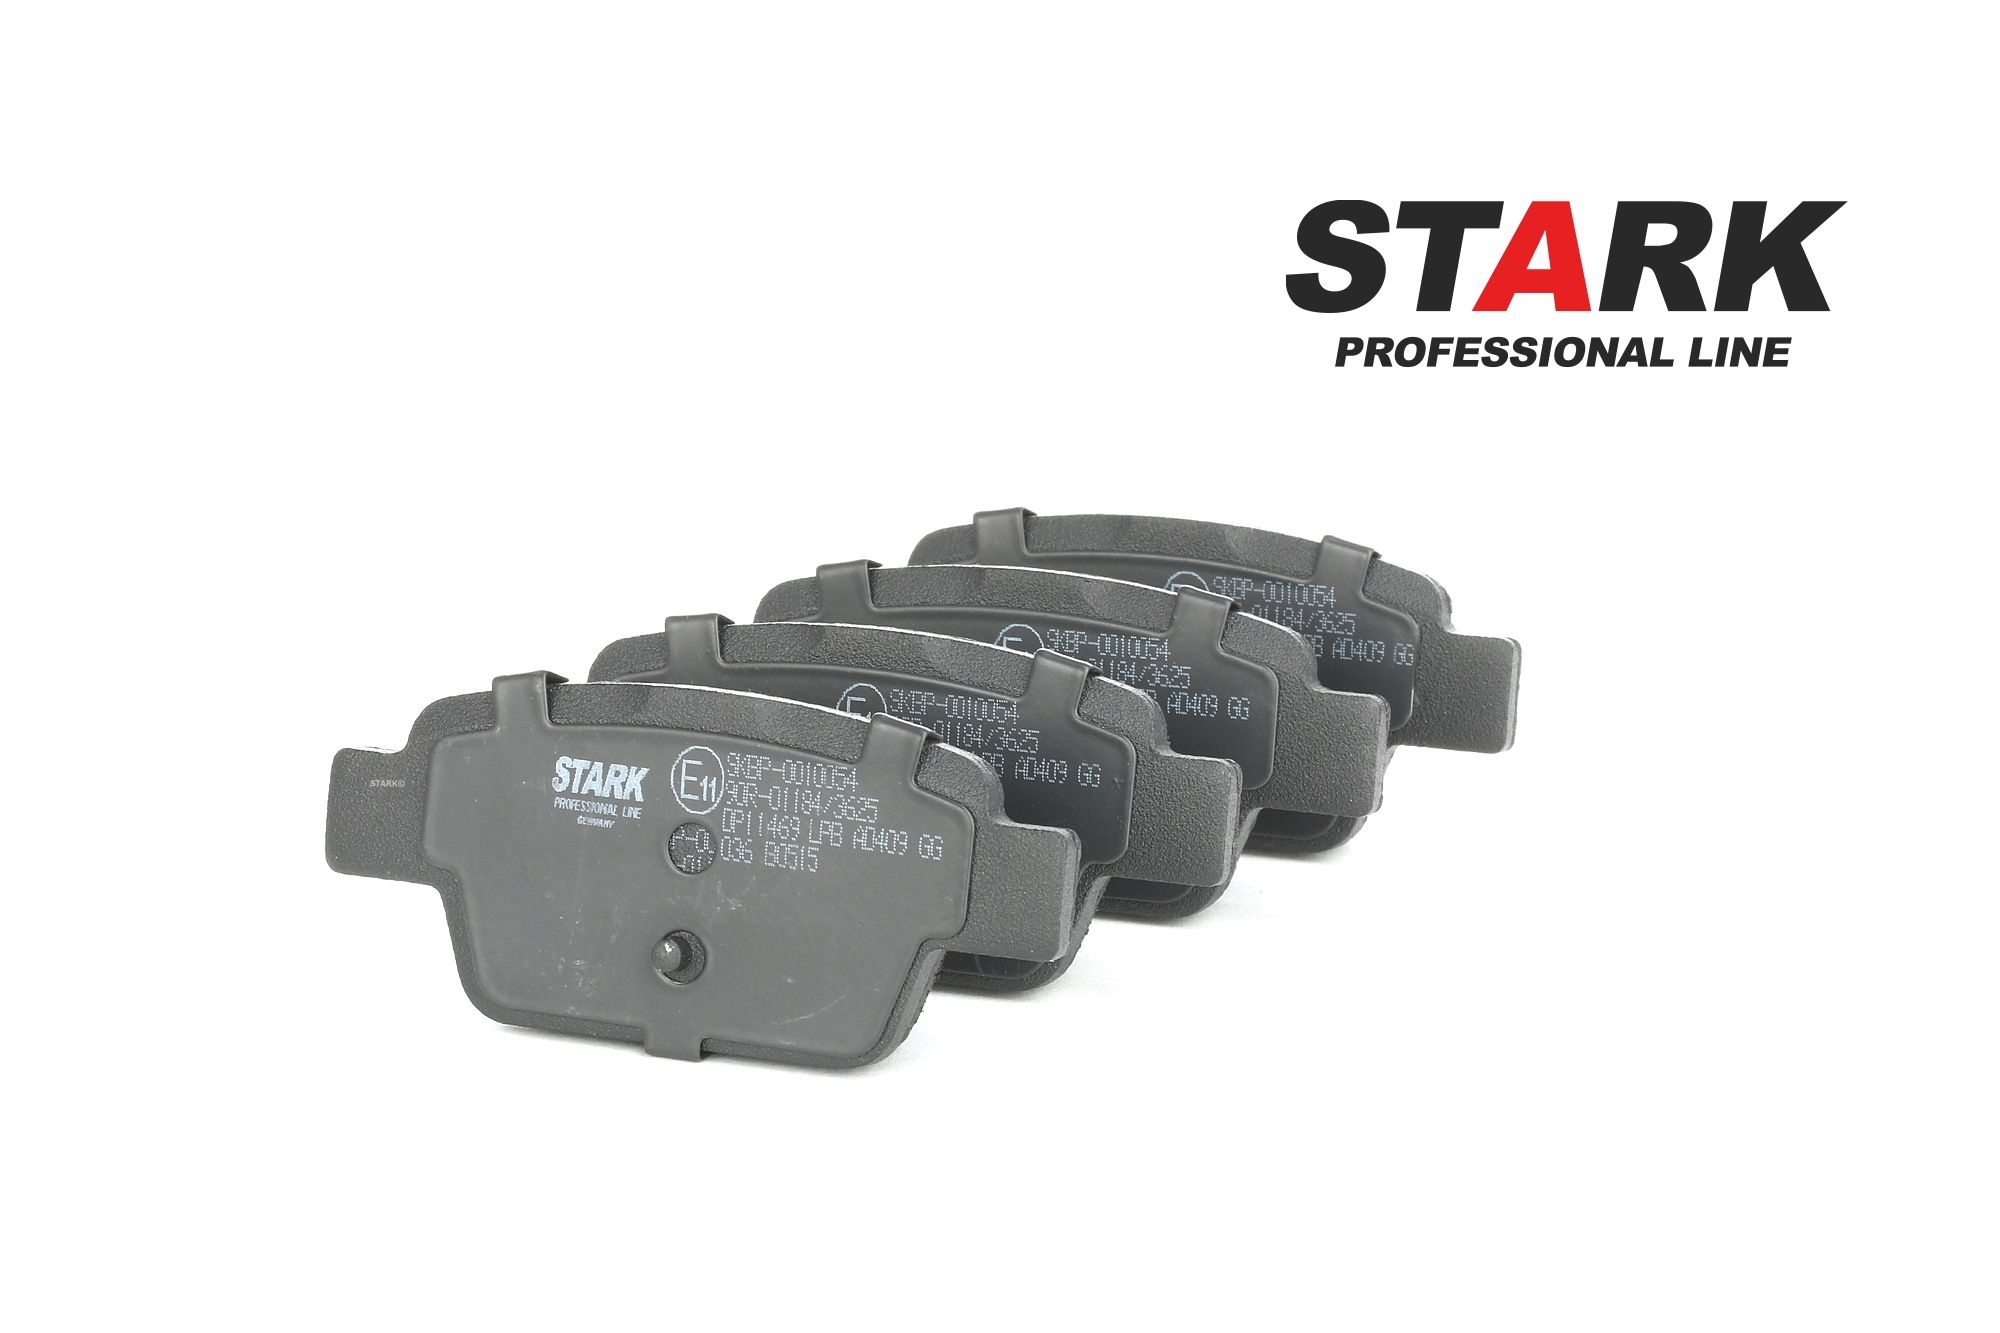 STARK SKBP-0010054 Bremsbelagsatz günstig in Online Shop